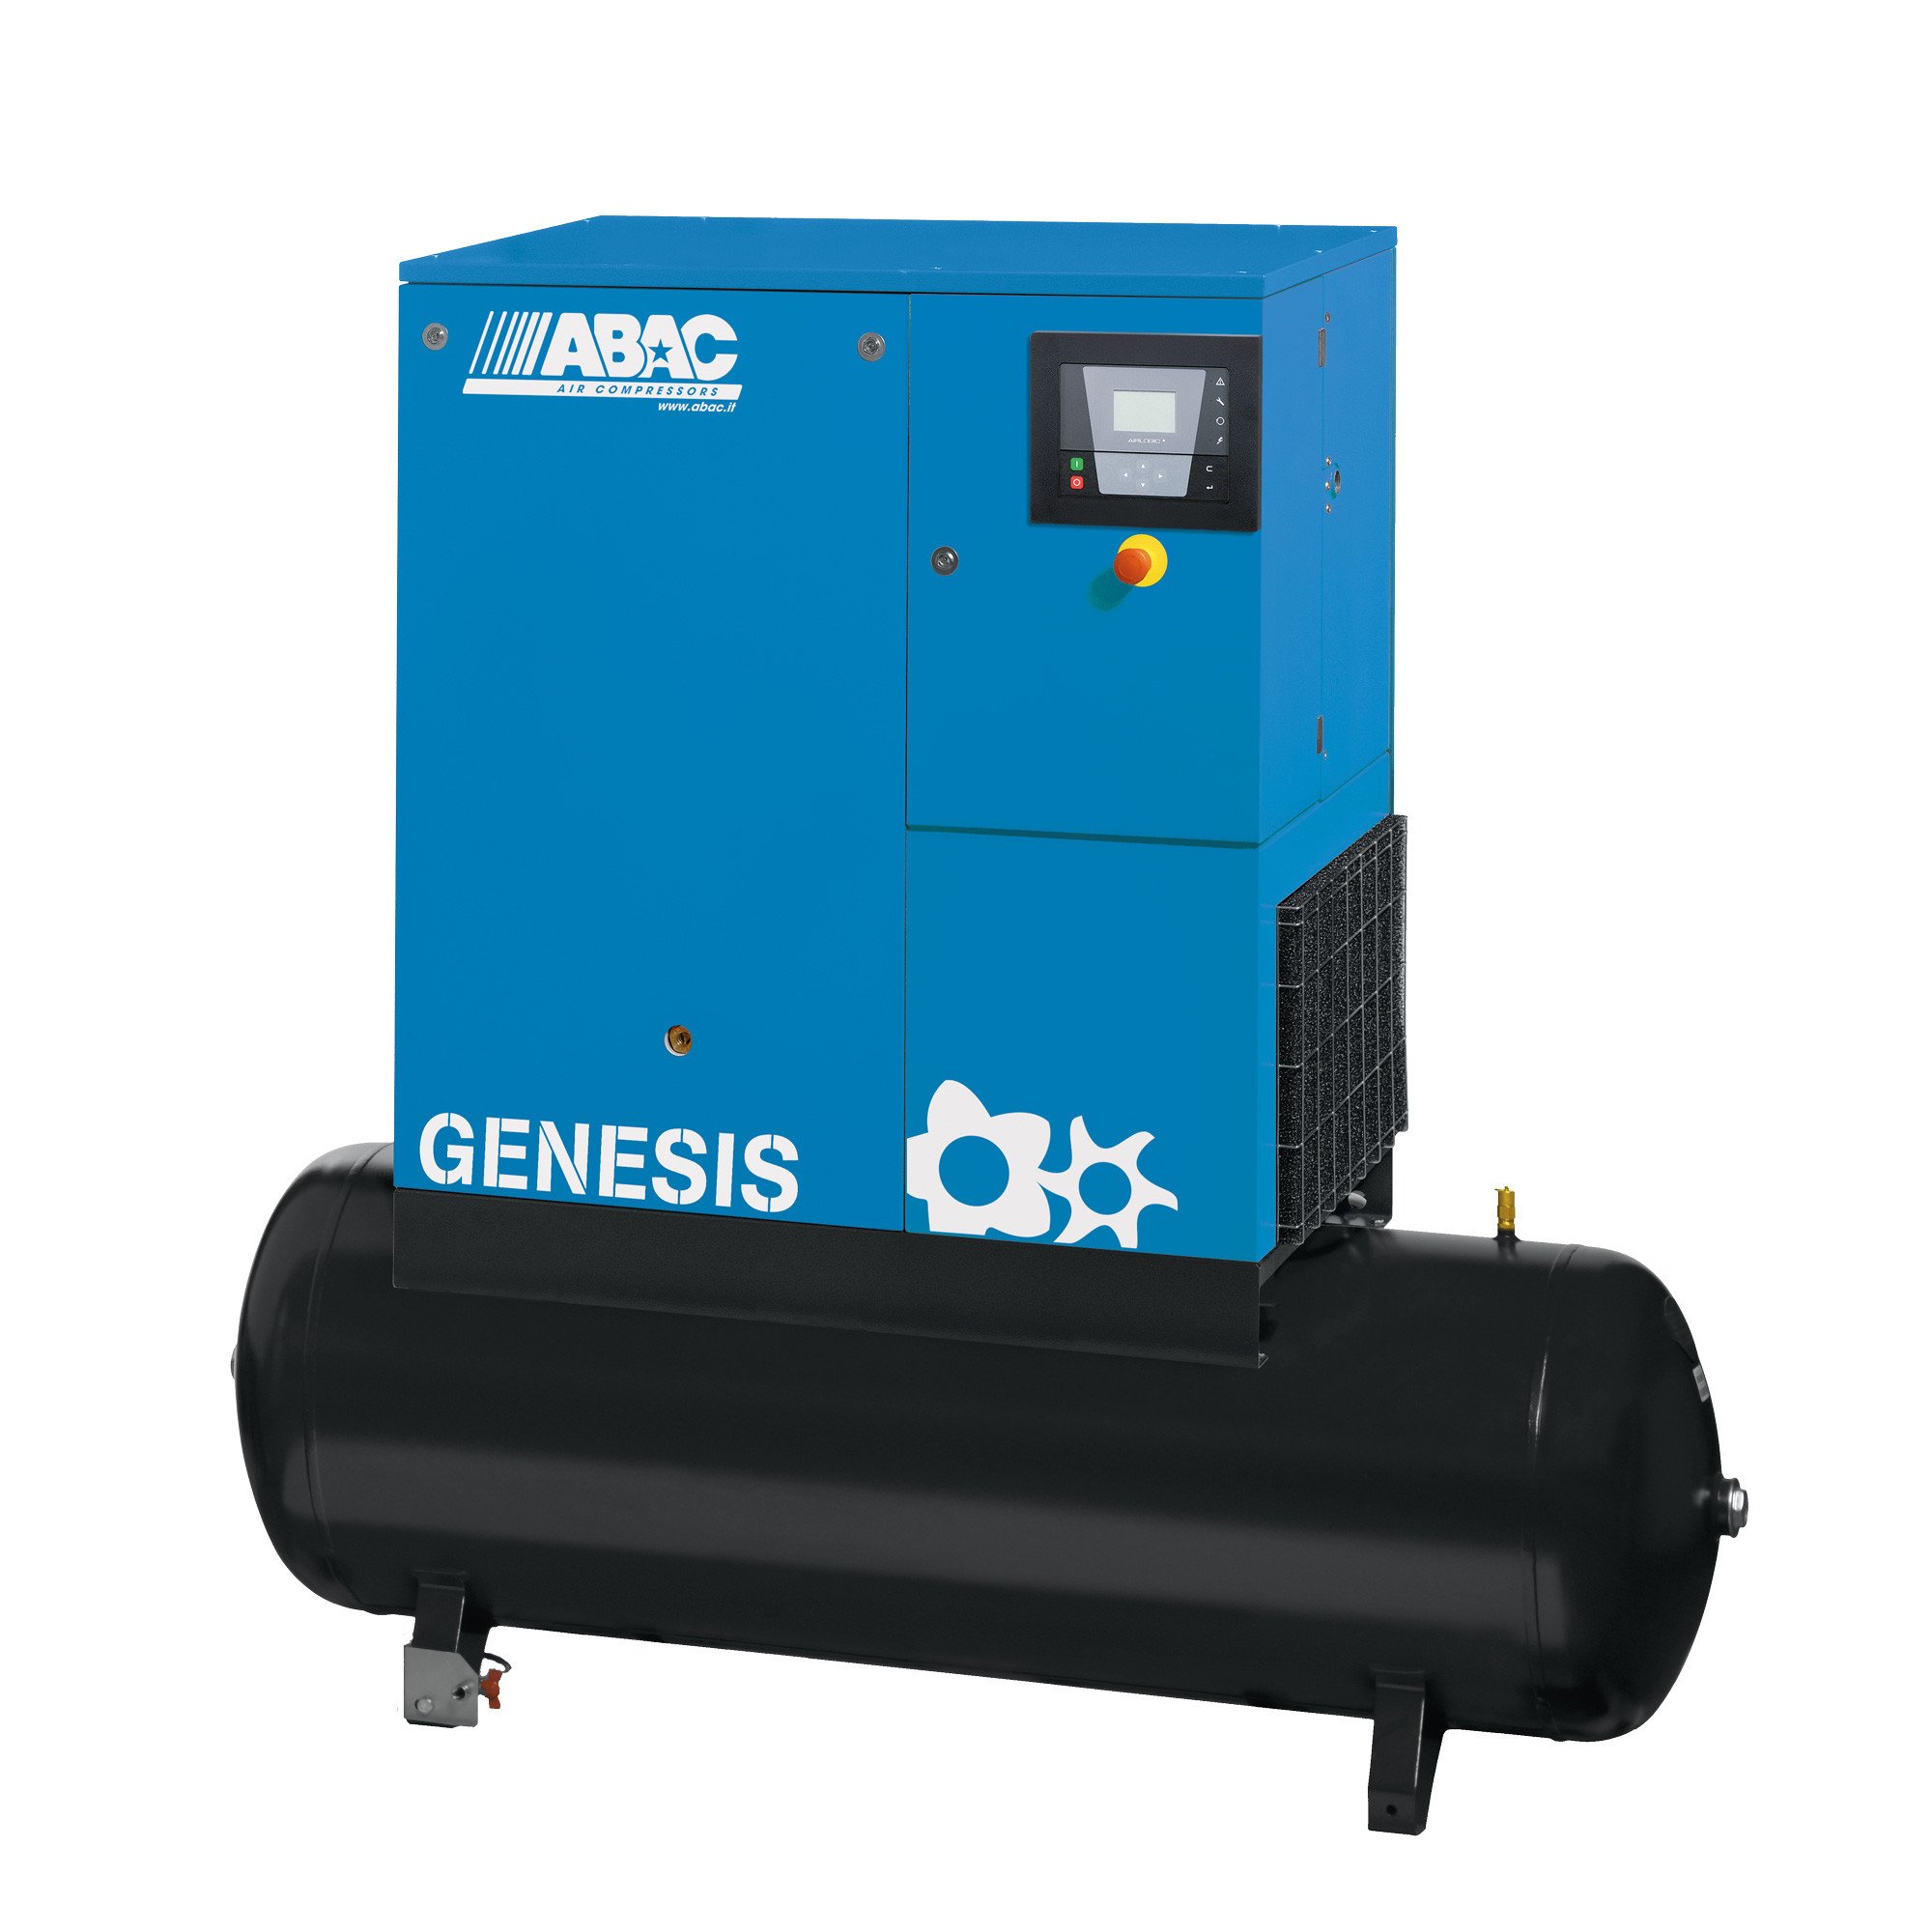 ABAC Genesis 500L, 52.7 CFM, 11 kW定速螺杆空压机